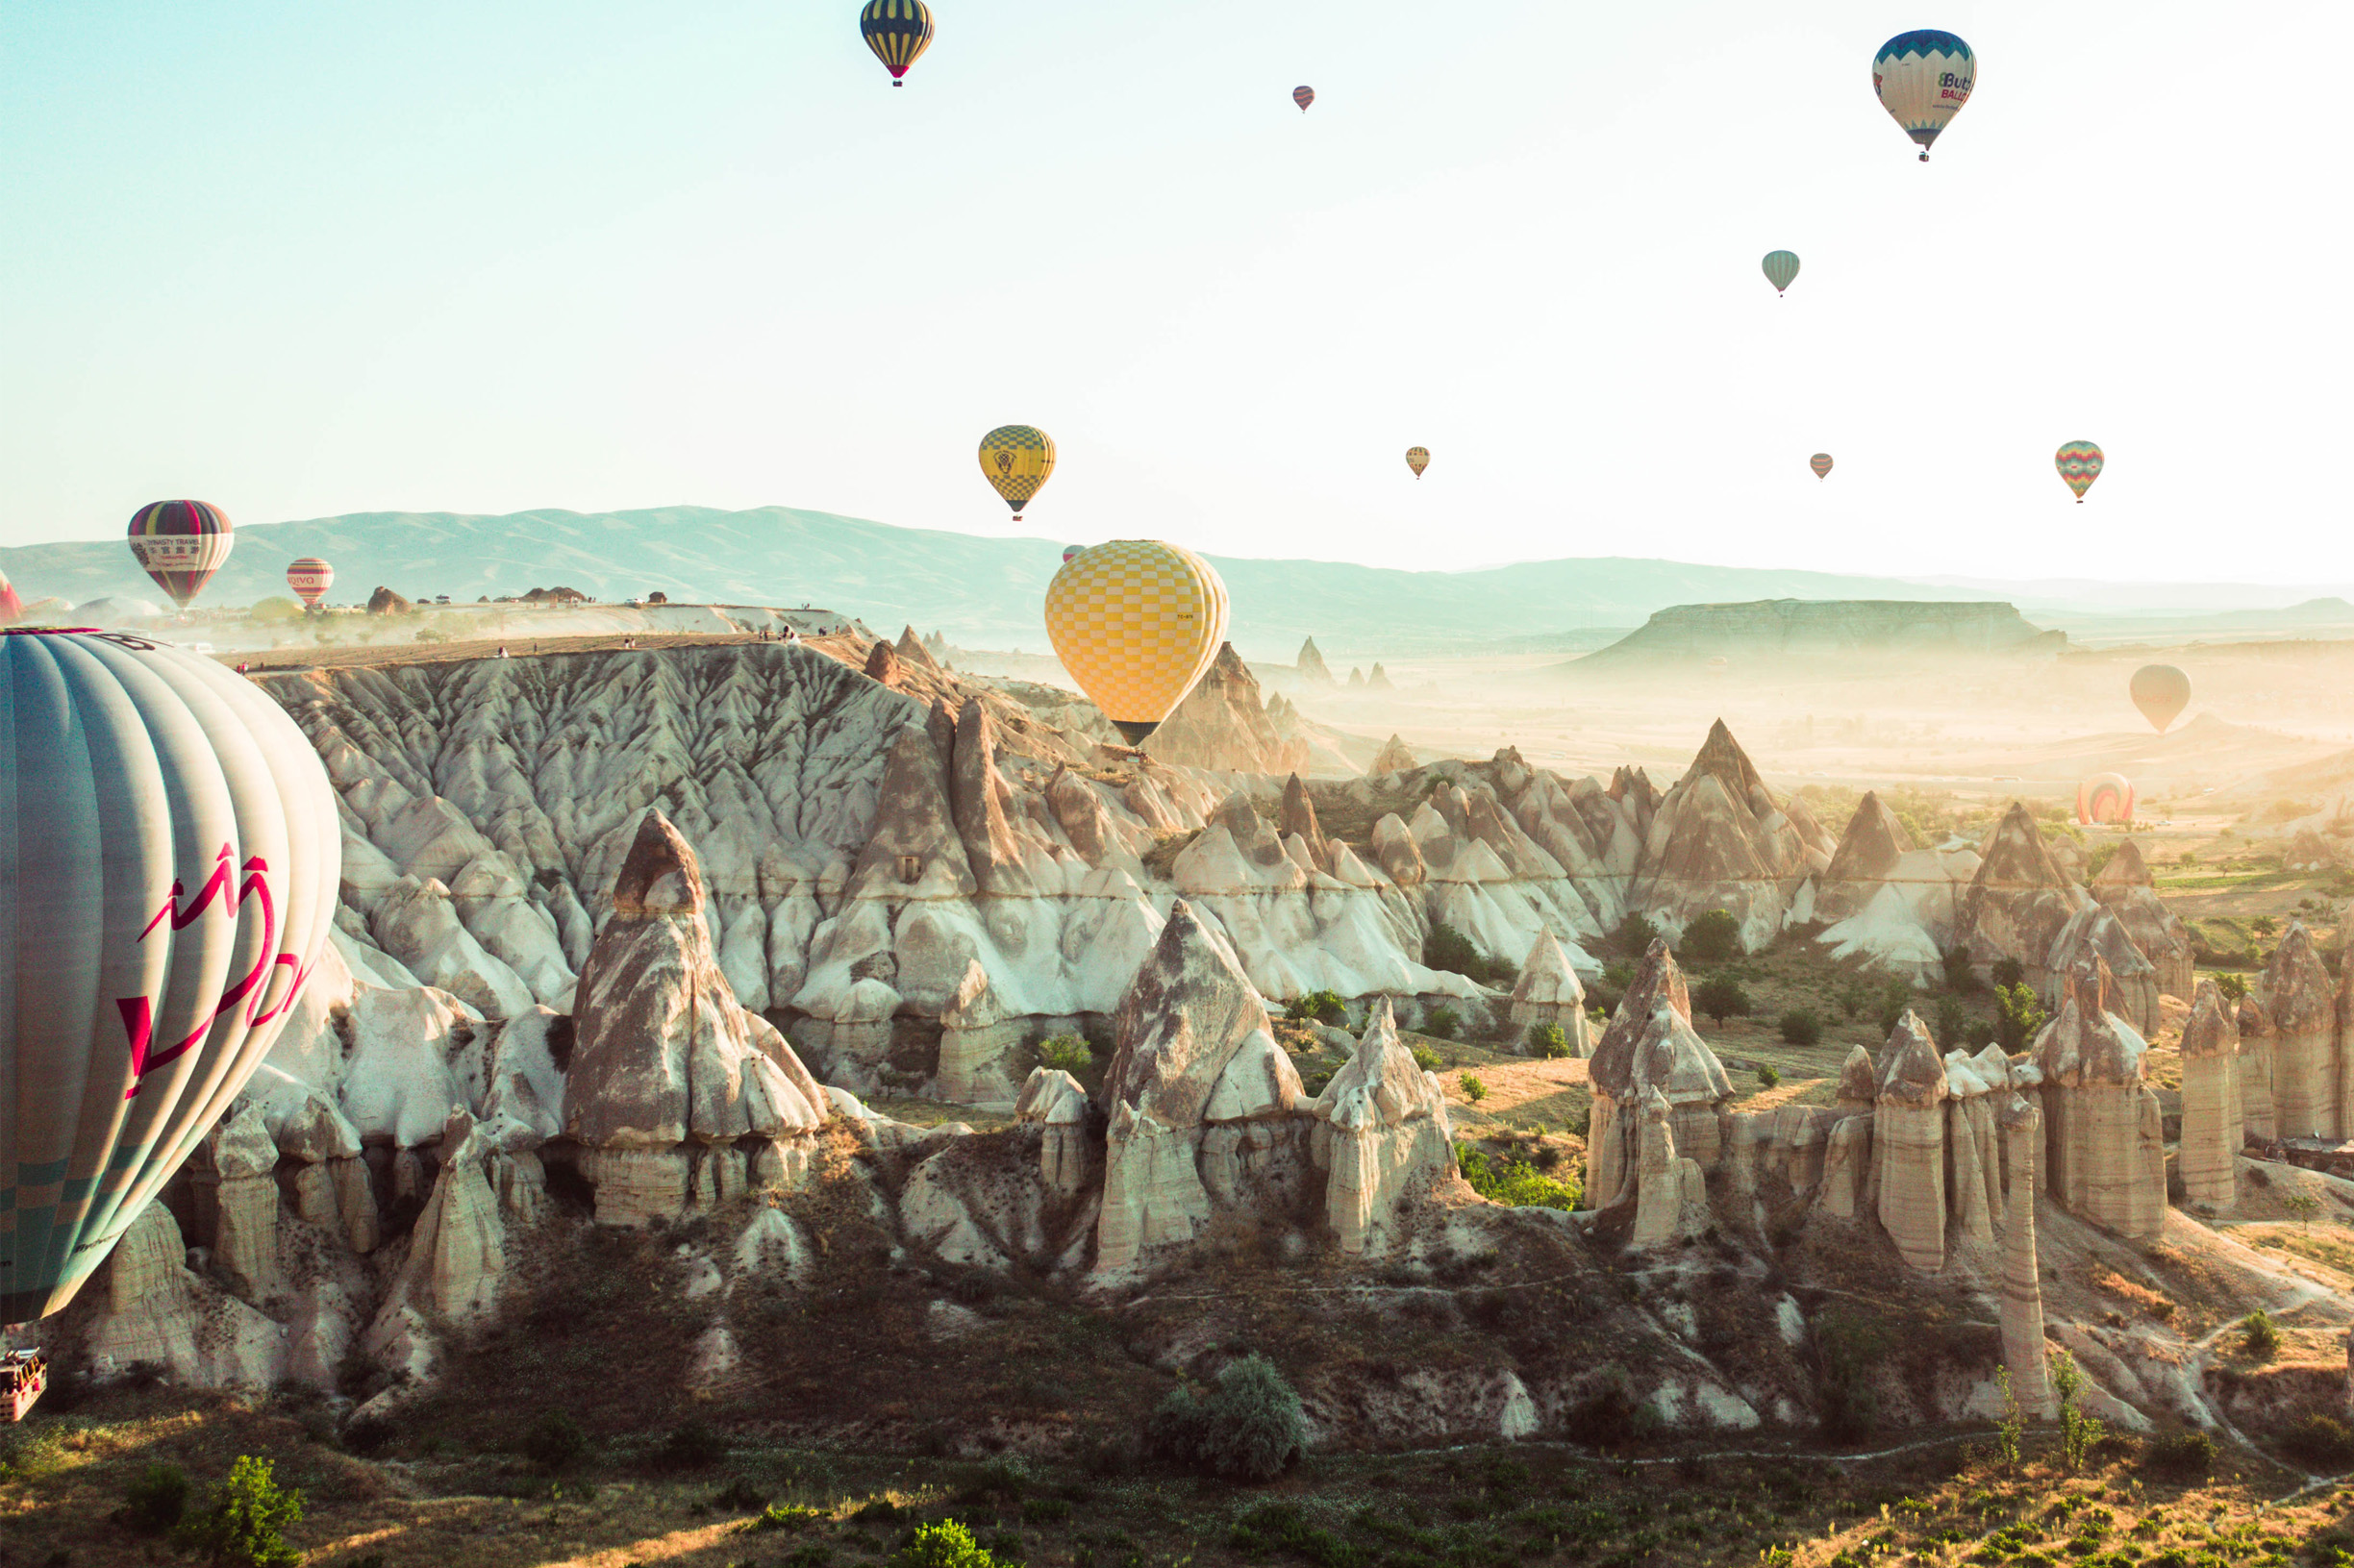 Török táj egzotikus hegyekkel és sok hőlégballonnal, Kappadókiában Törökország középső részén